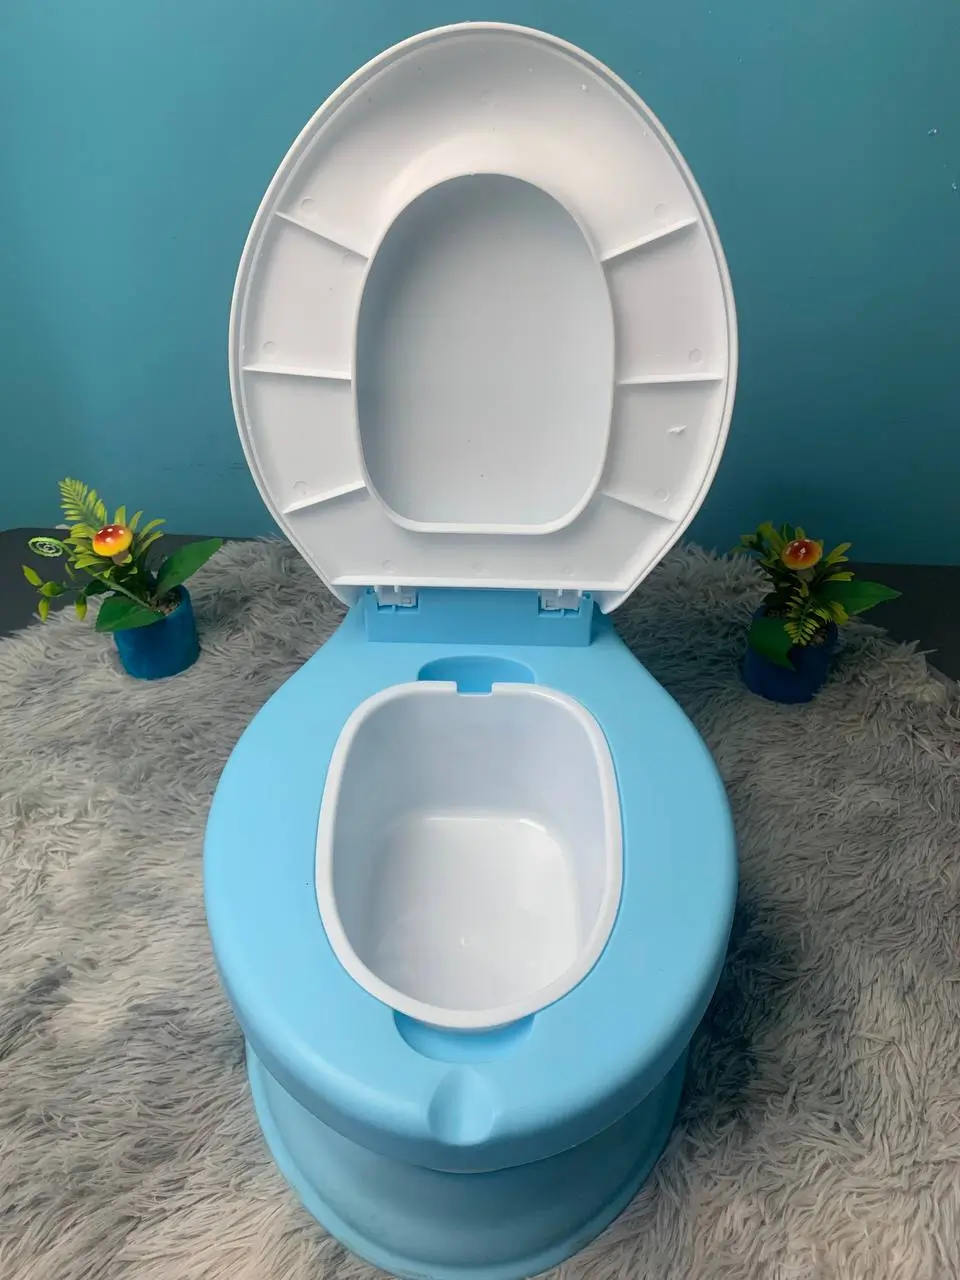 Pot de toilette WC pour bébé - الجزائر الجزائر